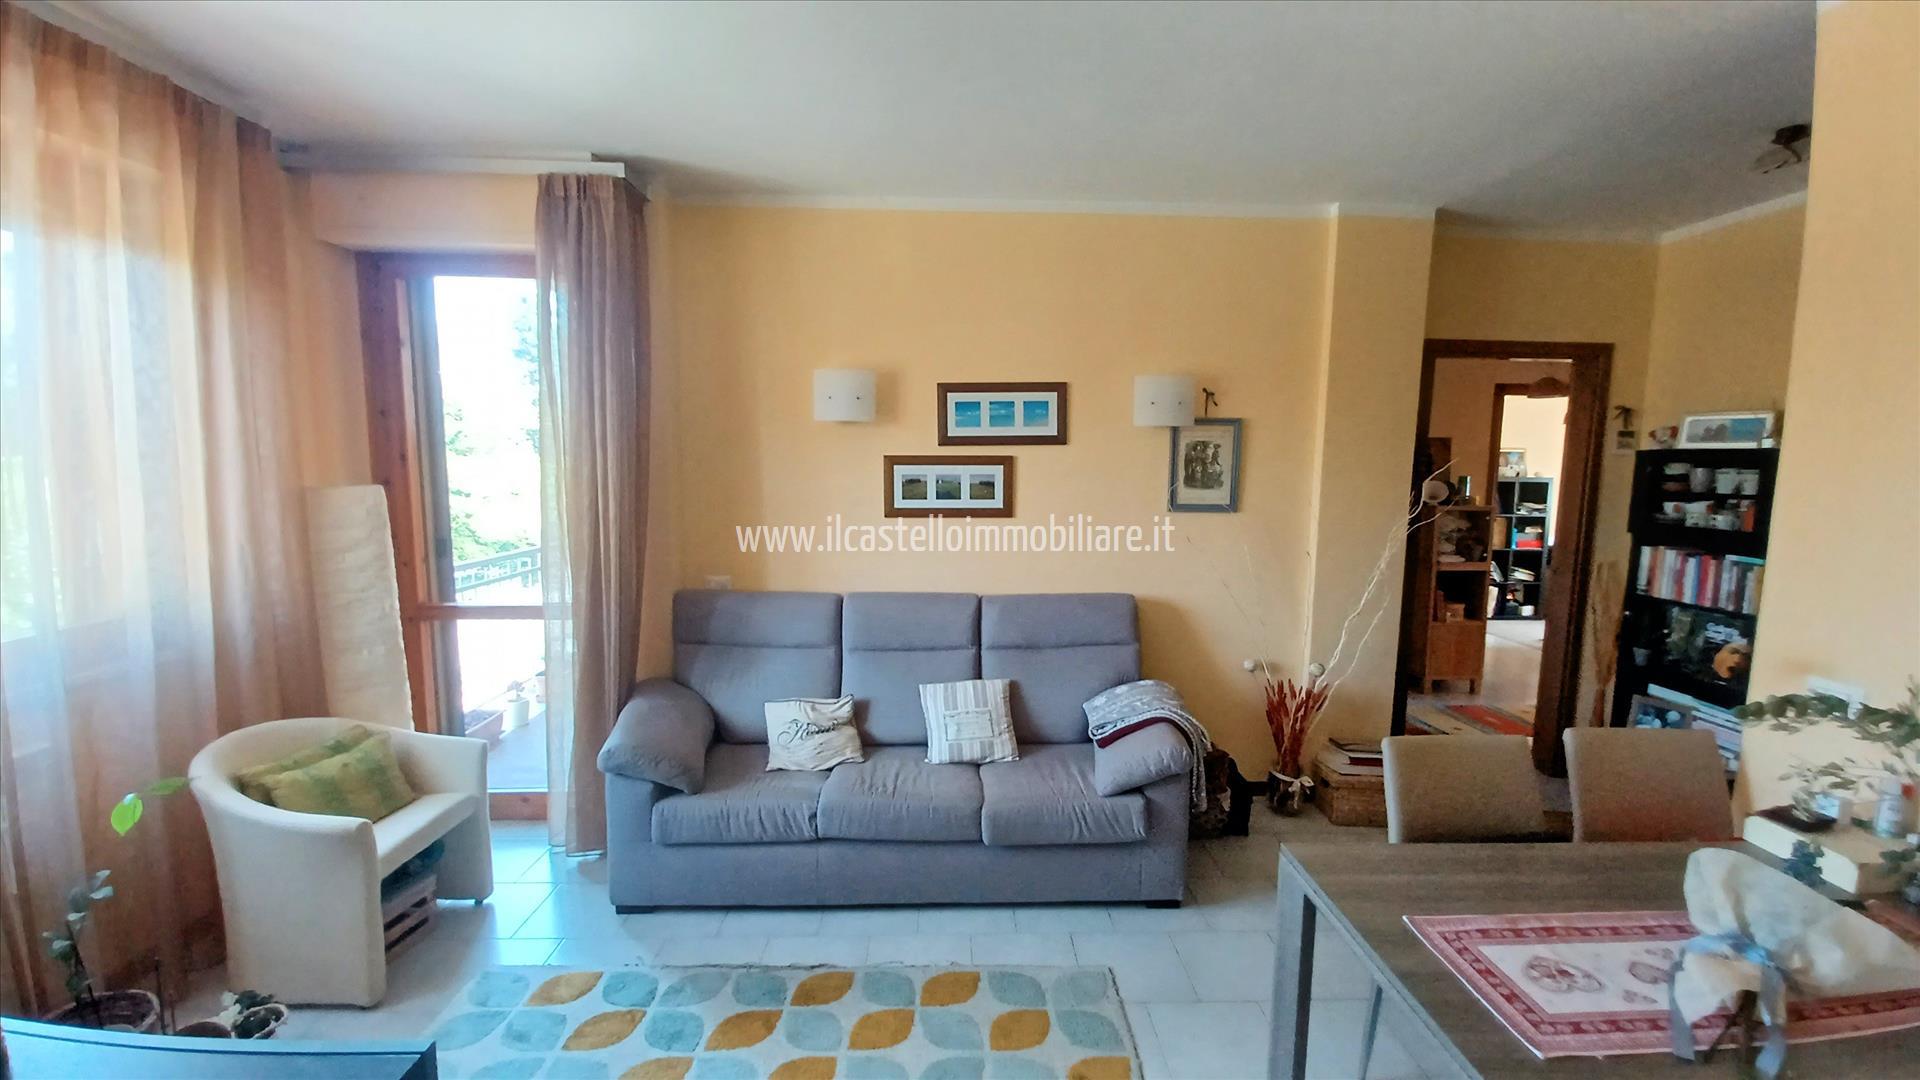 Appartamento in vendita a Chiusi, 3 locali, prezzo € 130.000 | PortaleAgenzieImmobiliari.it